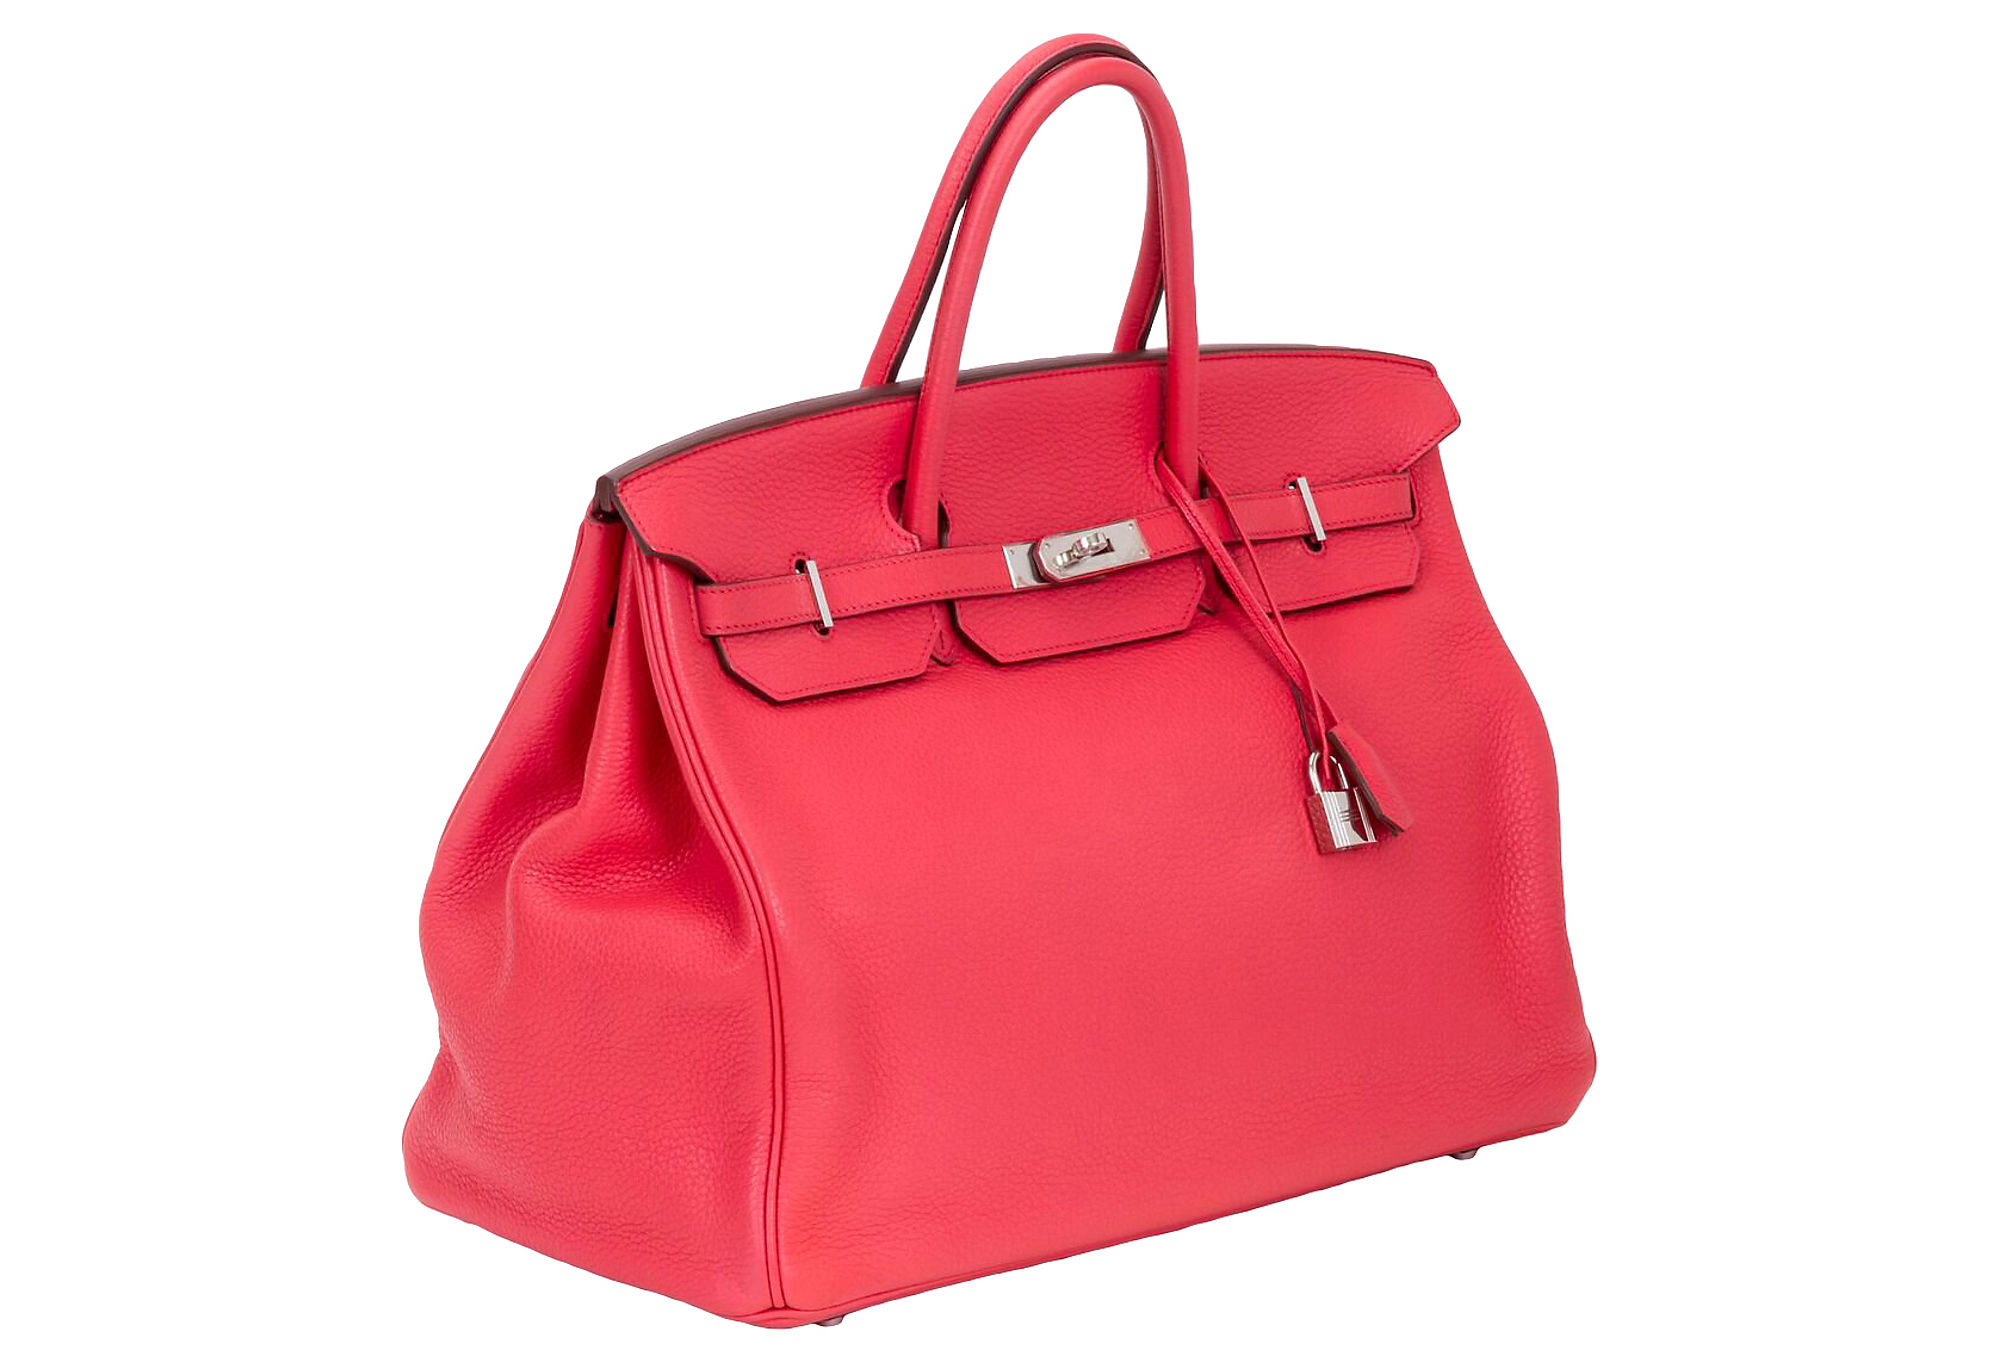 Hermès Pre-owned Birkin 35 Bag - Red